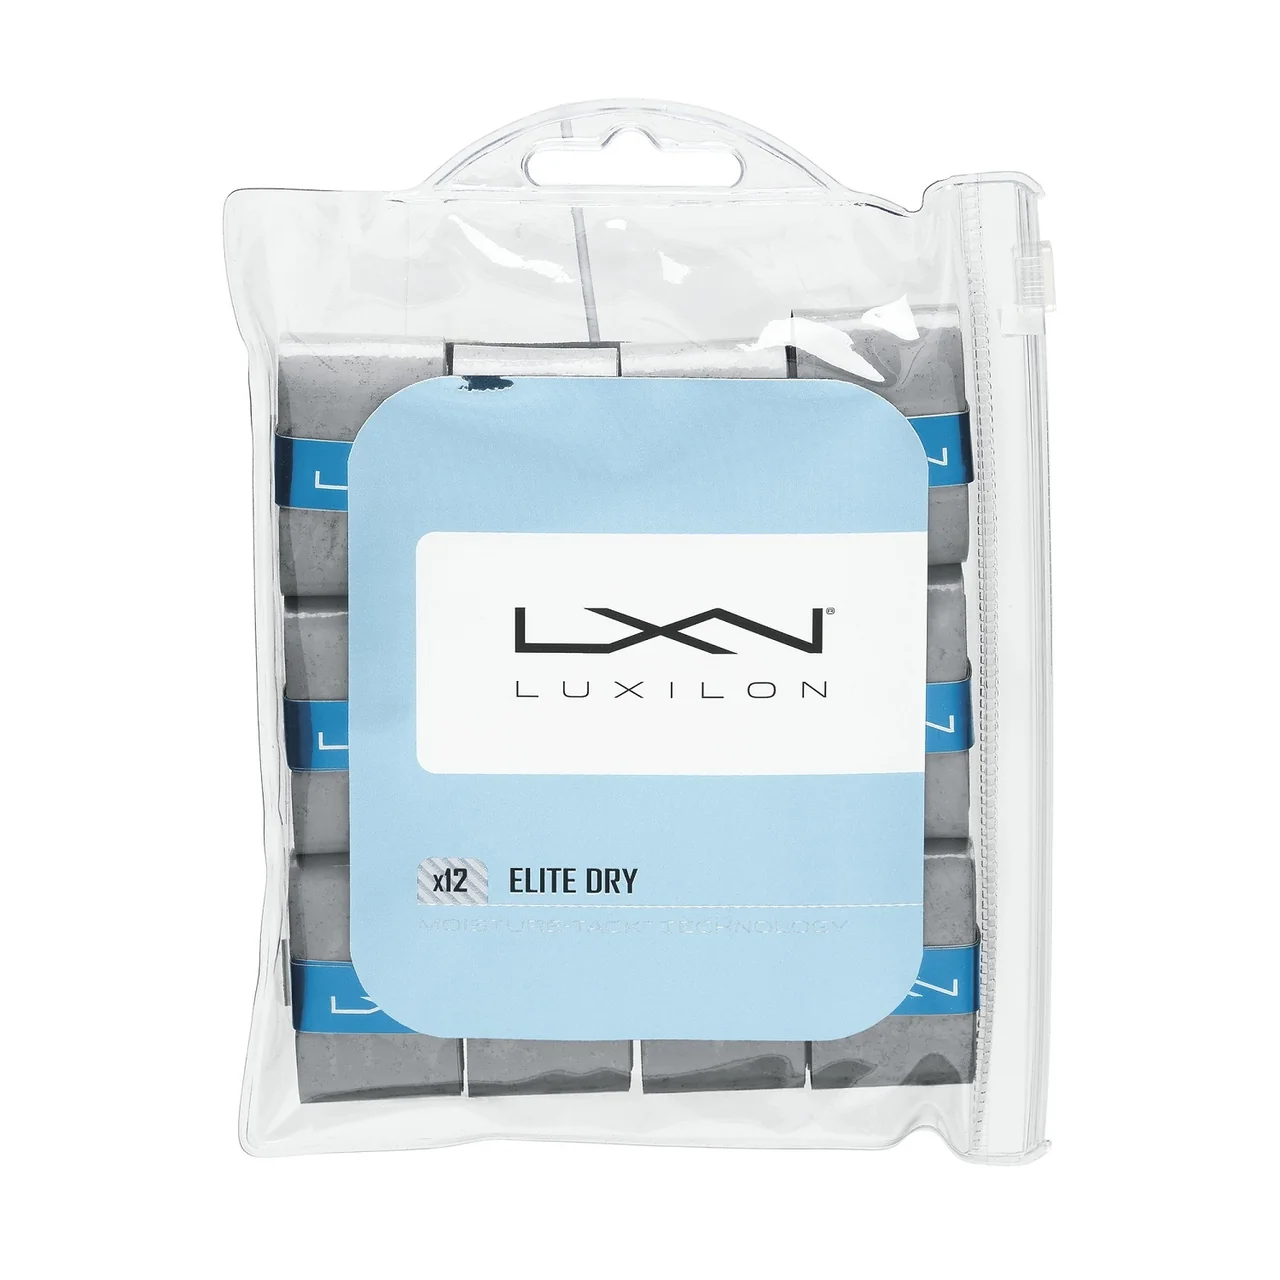 Luxilon Elite Dry Surgrip x12